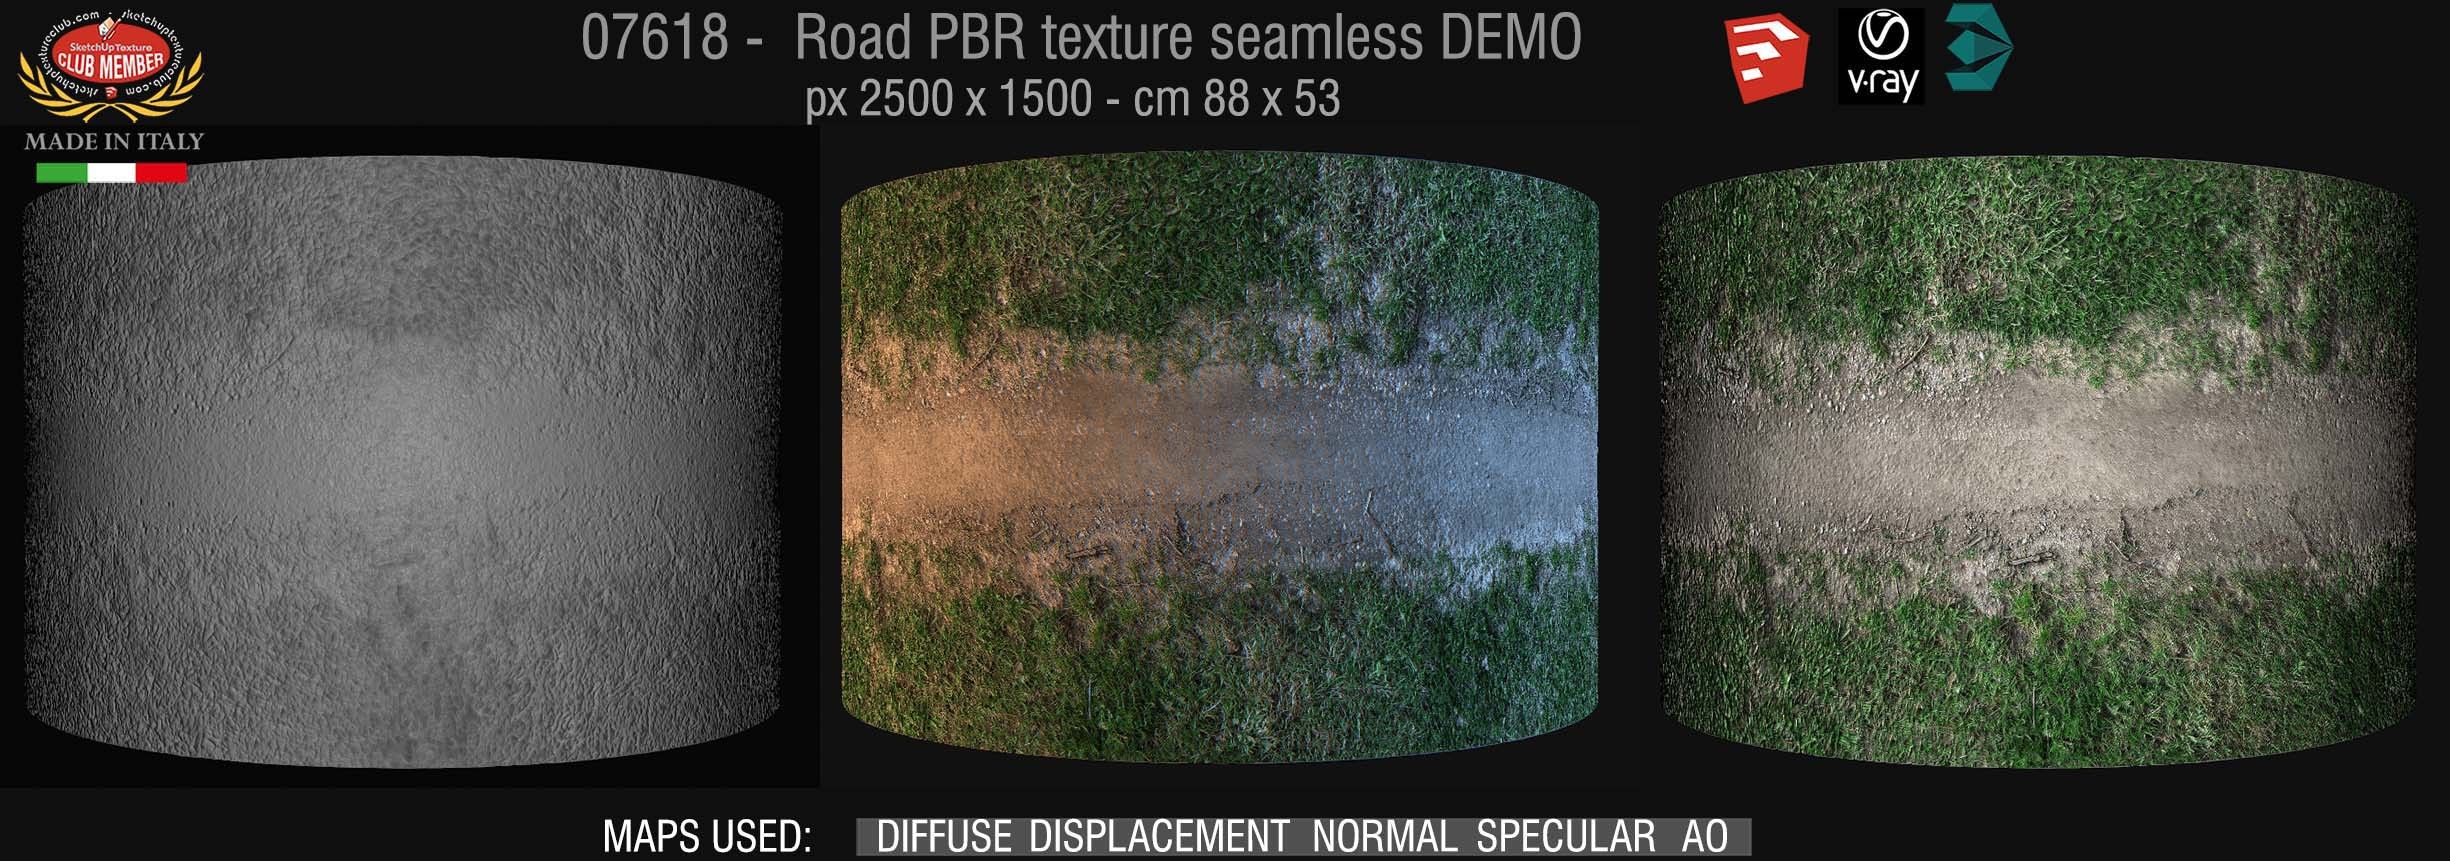 07618 Dirt road PBR texture seamless